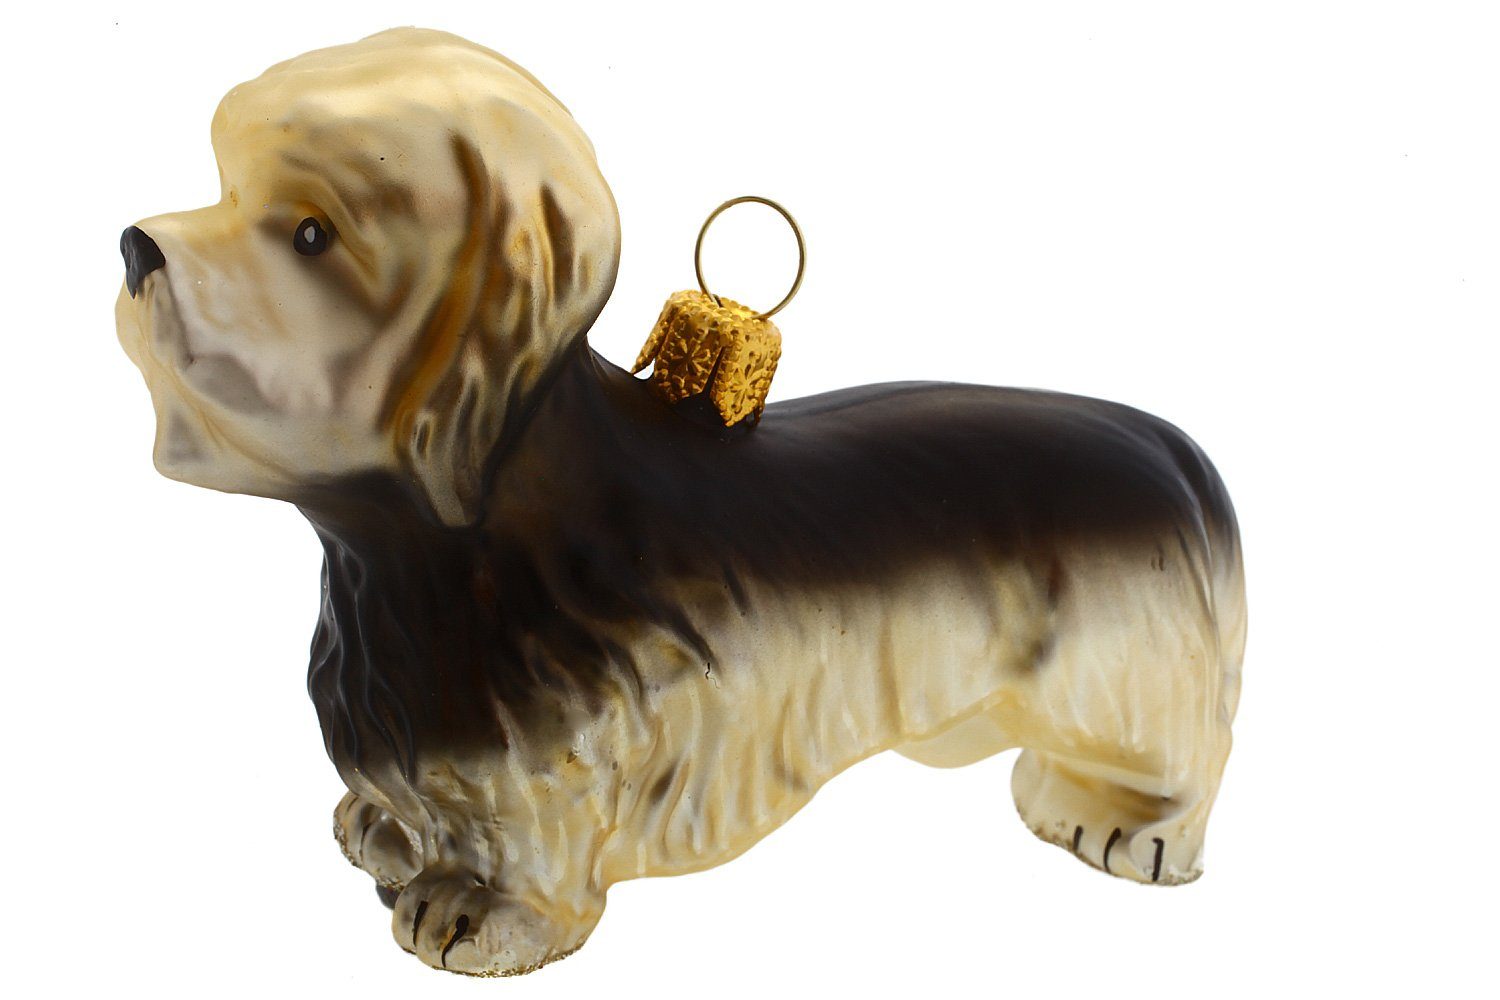 mundgeblasen Terrier, handdekoriert Weihnachtskontor - Christbaumschmuck Hamburger Dinmont Dandie